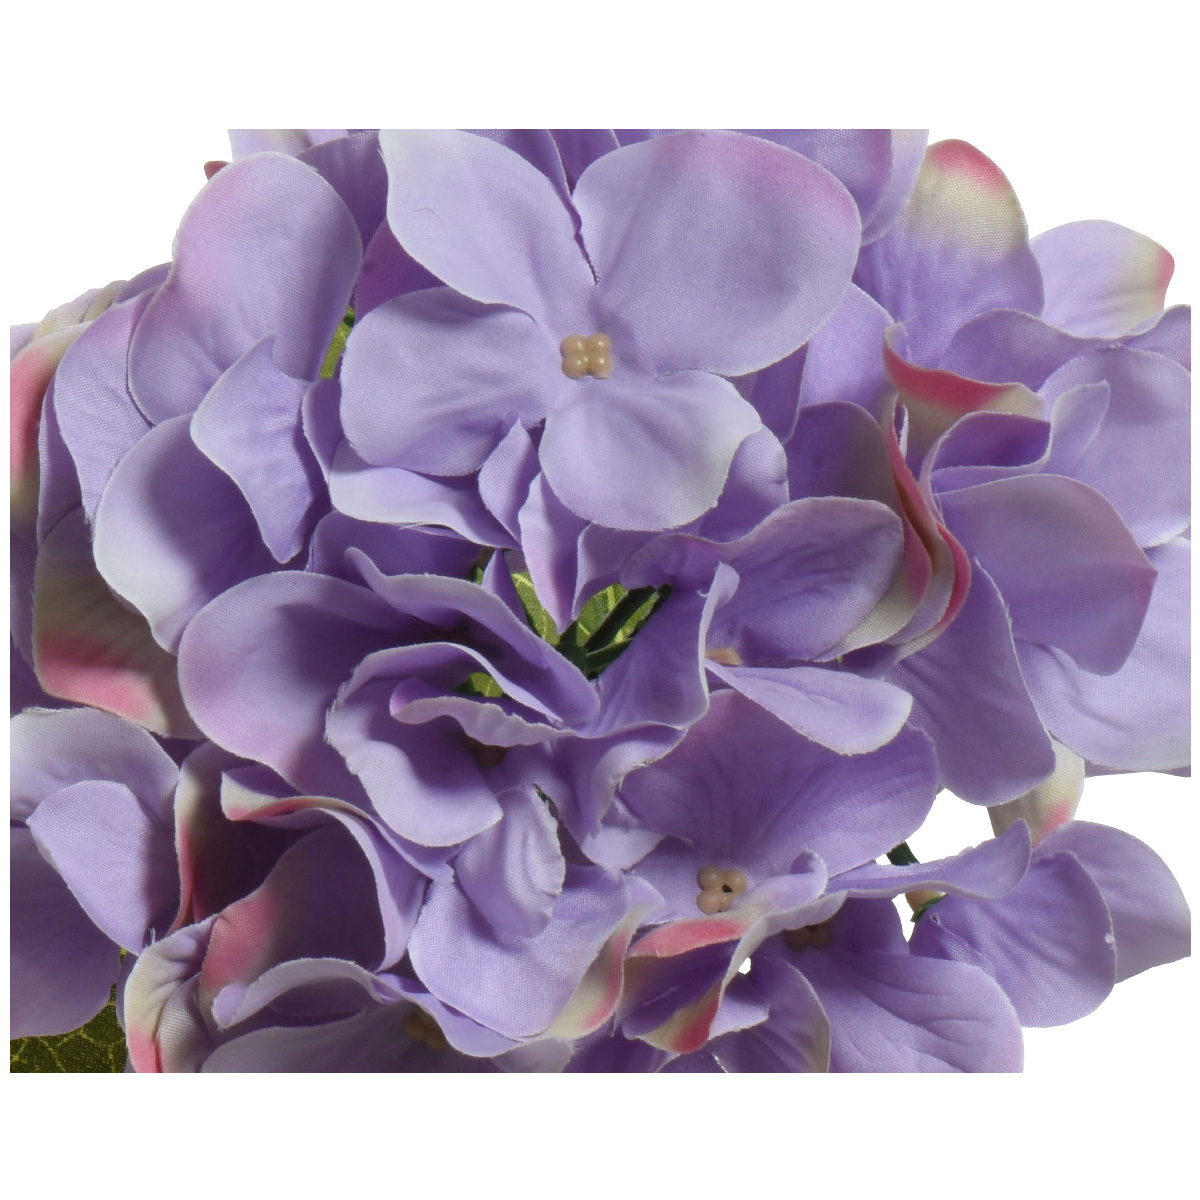 Veštačko cveće hortenzija 800165 